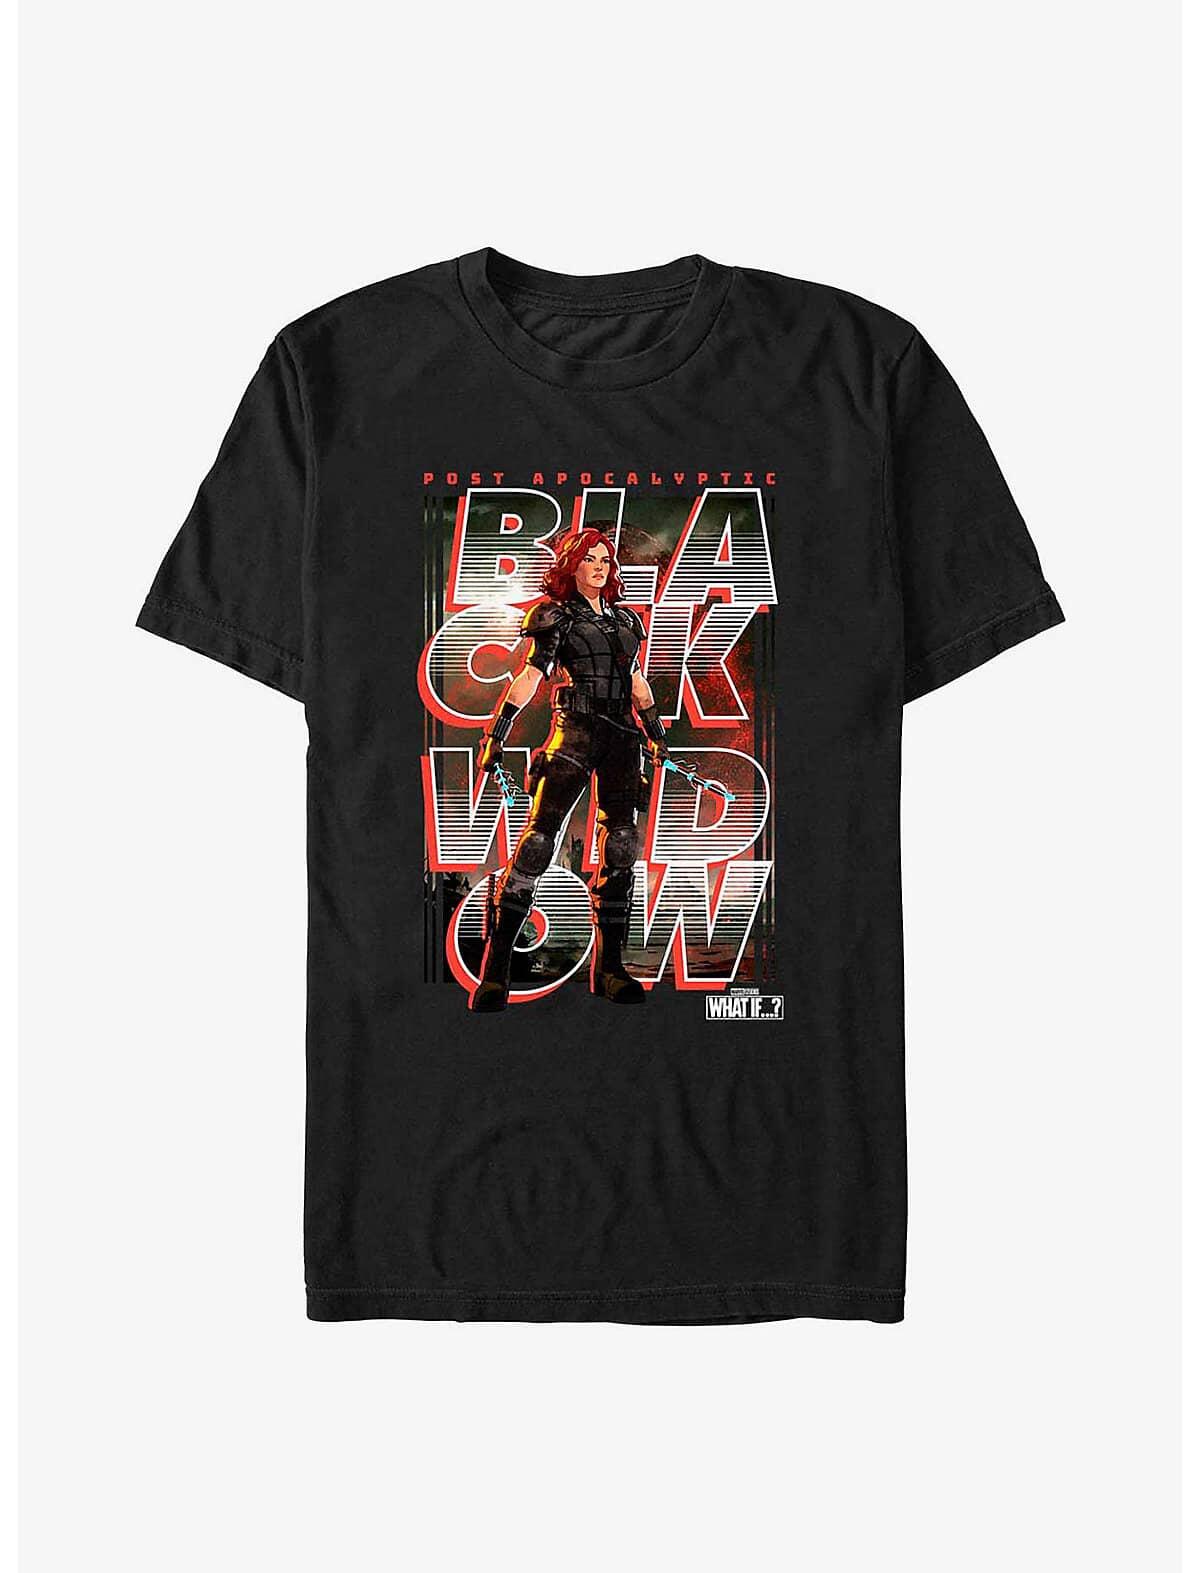 Black Widow Key T-Shirt